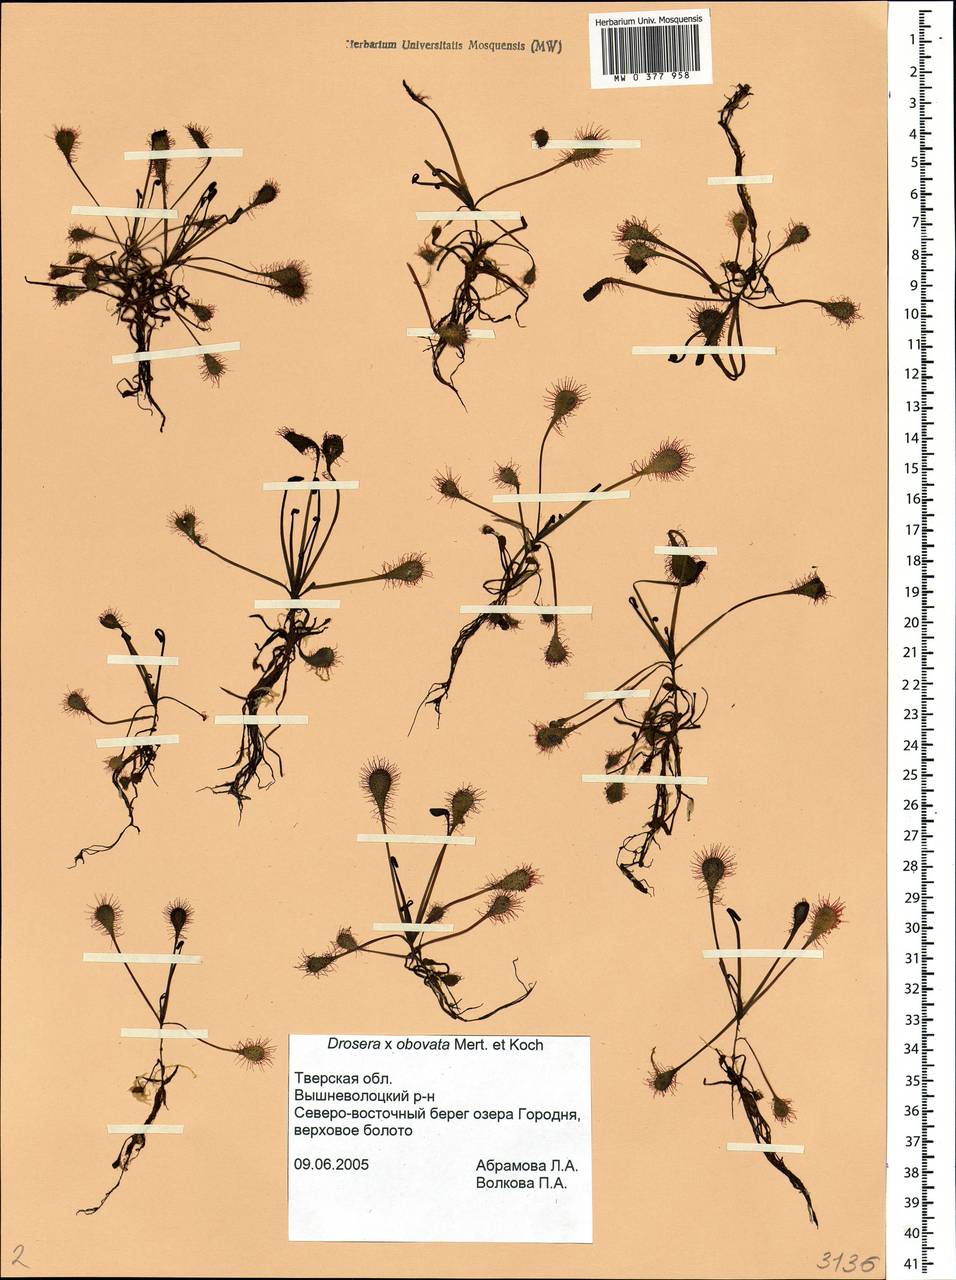 Drosera ×obovata Mert. & W. D. J. Koch, Eastern Europe, North-Western region (E2) (Russia)